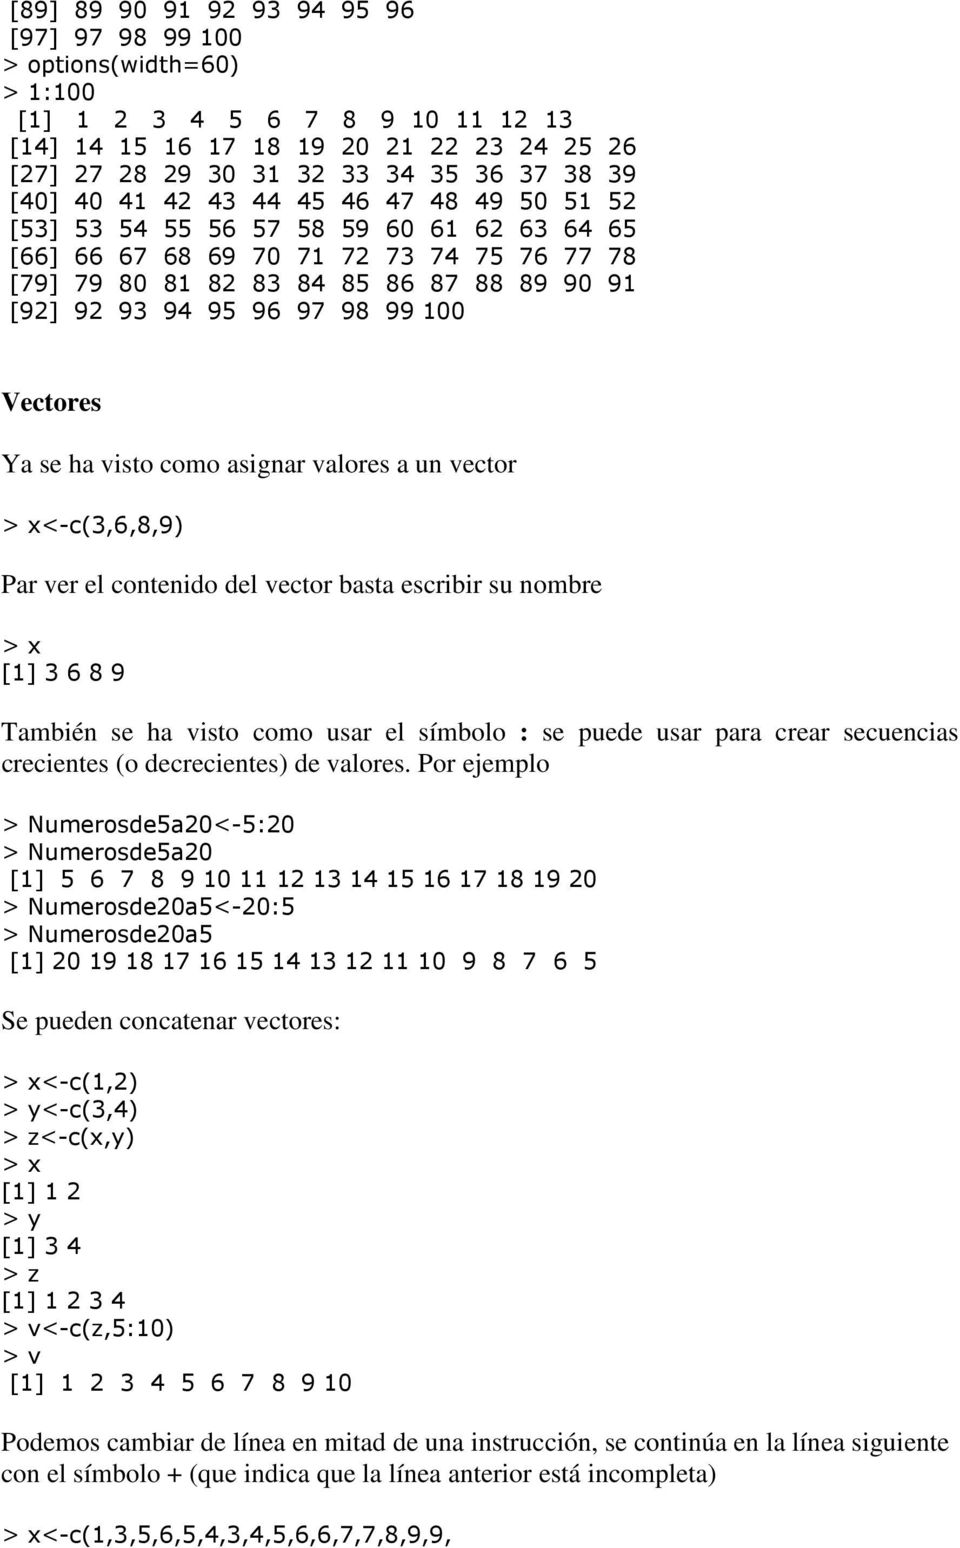 98 99 100 Vectores Ya se ha visto como asignar valores a un vector <-c(3,6,8,9) Par ver el contenido del vector basta escribir su nombre [1] 3 6 8 9 También se ha visto como usar el símbolo : se